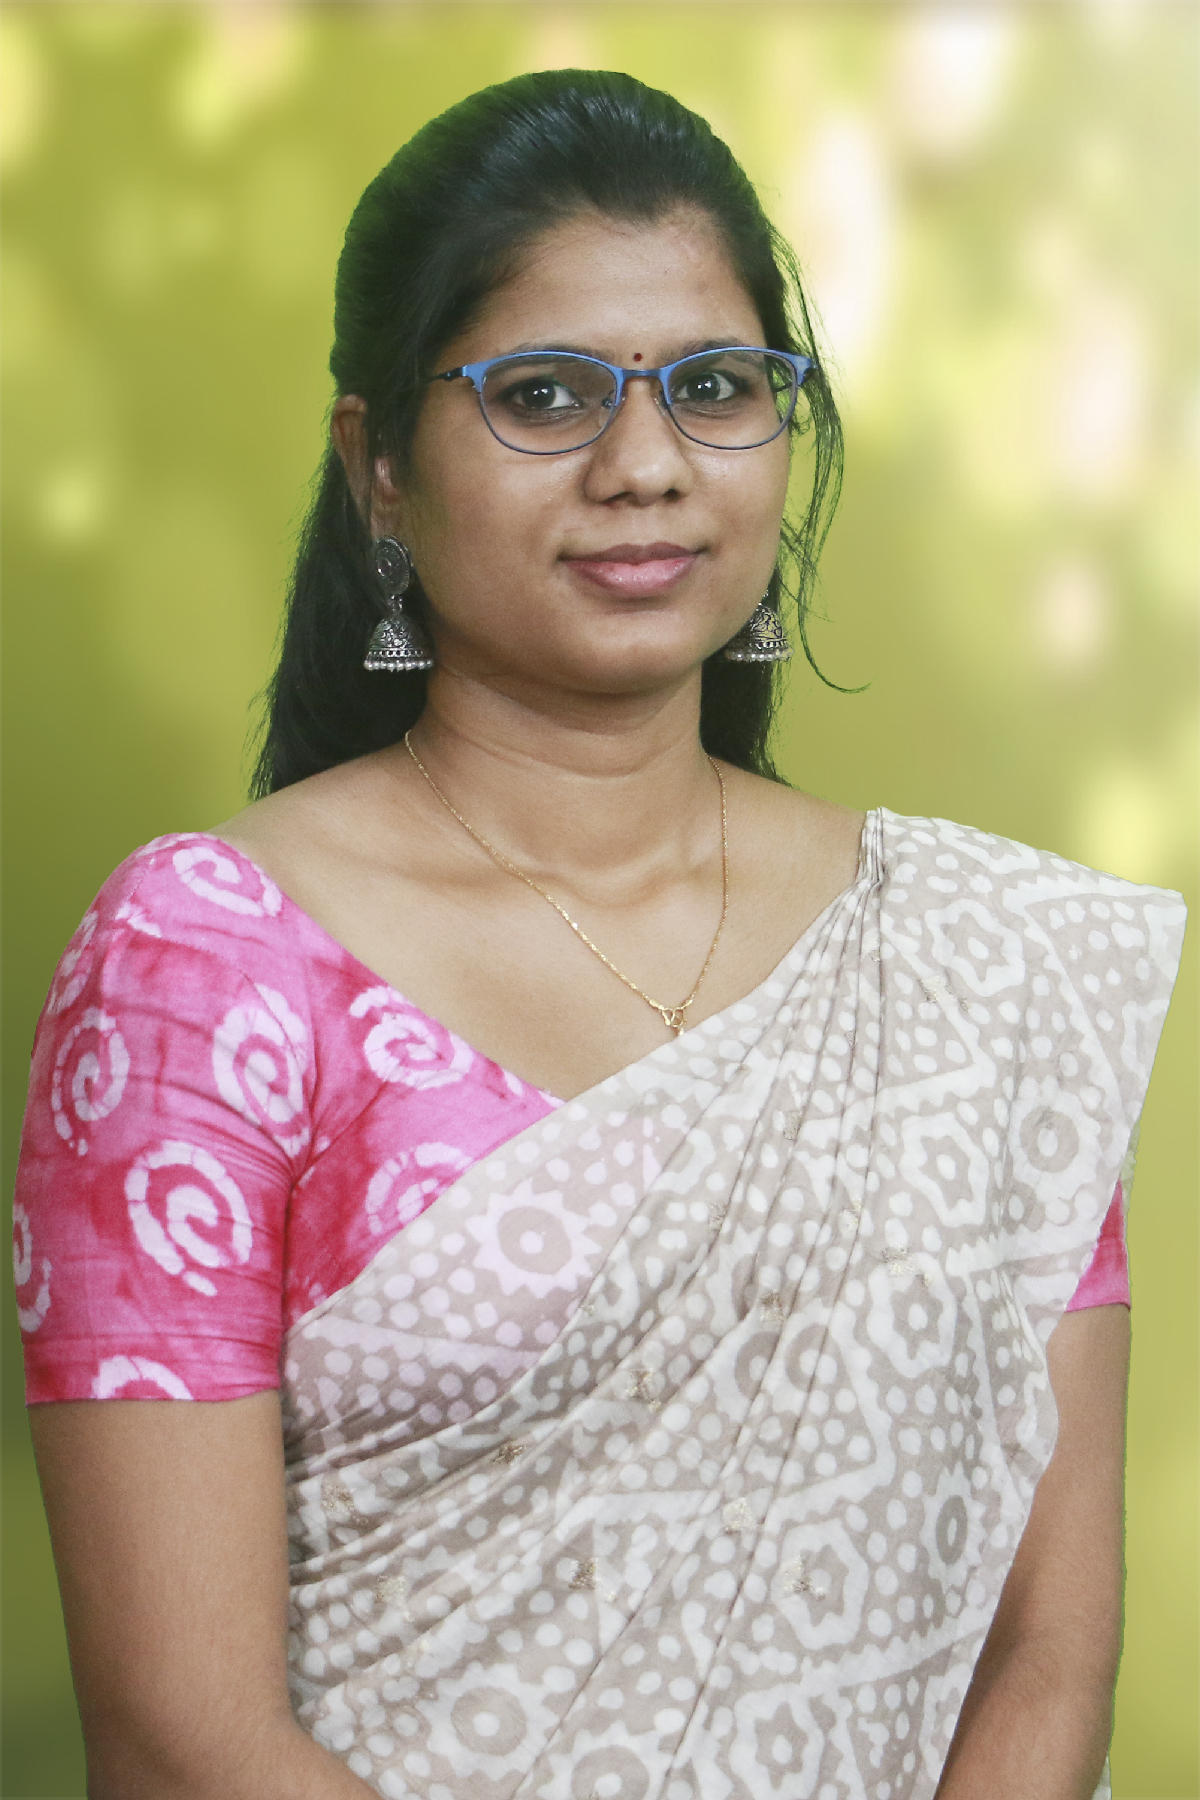 Ms. Shradha Raja Varma